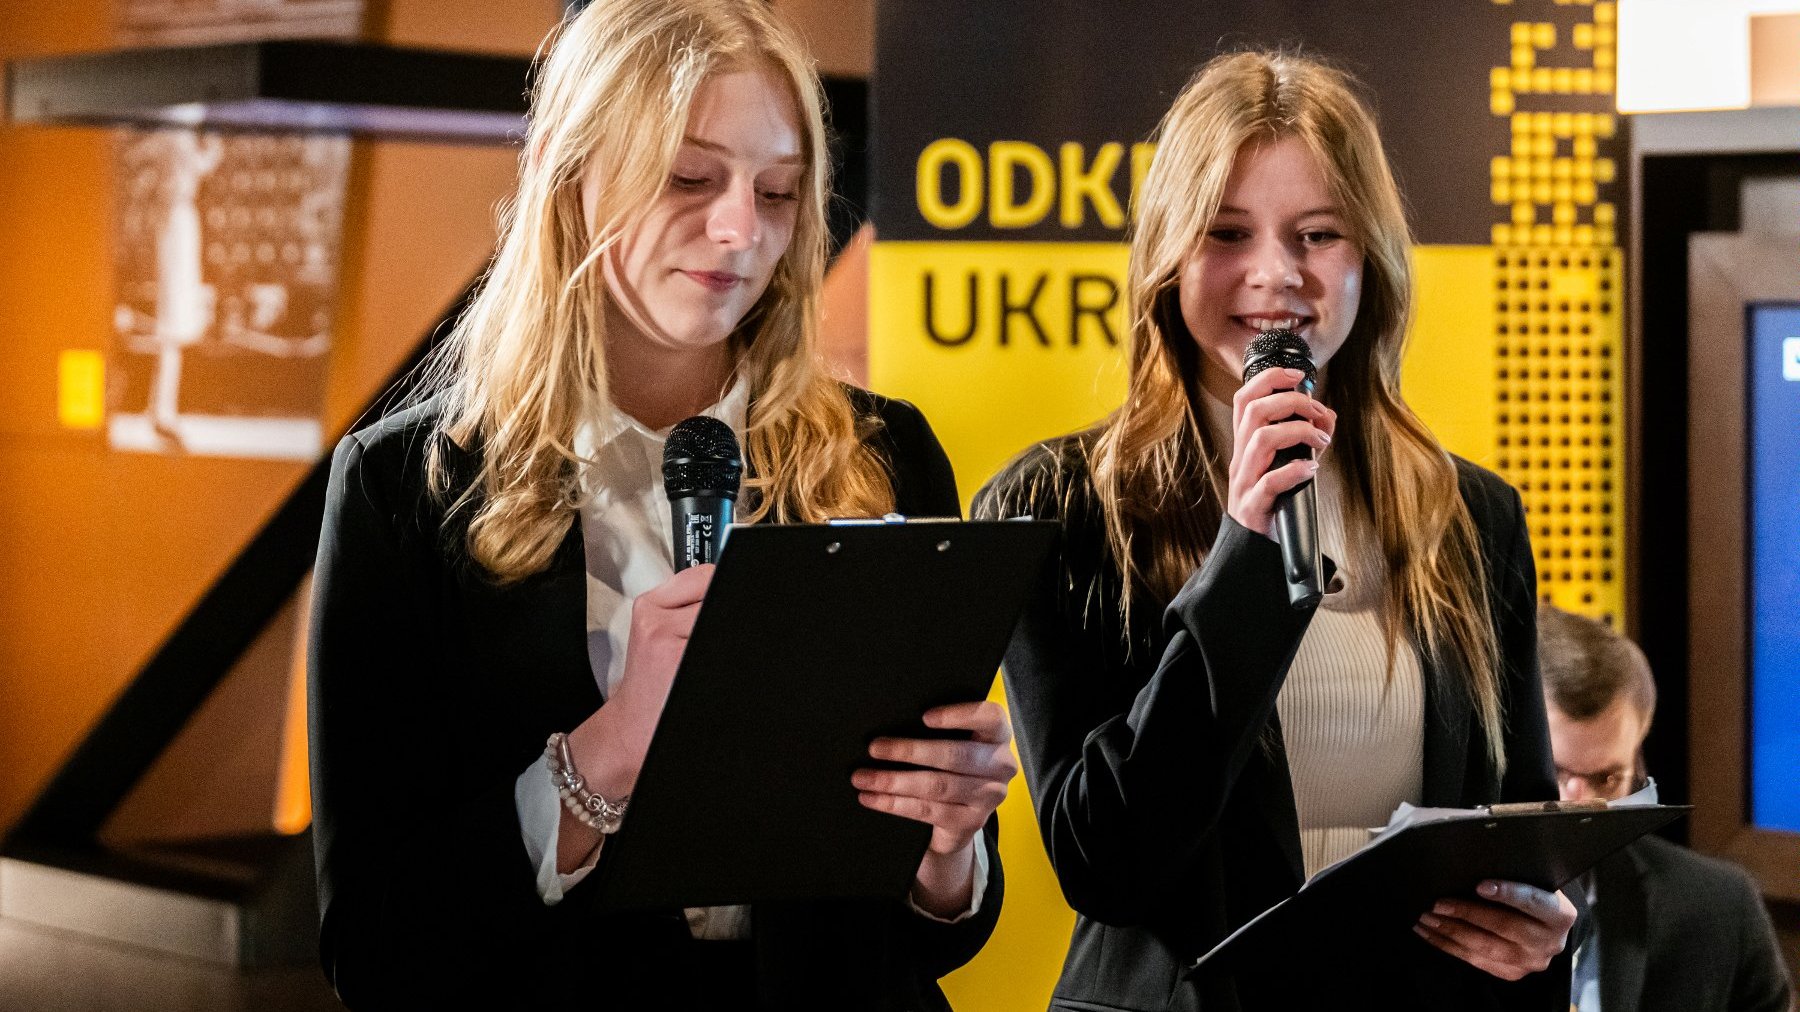 Zdjęcie przedstawia dwie młode dziewczyny trzymające mikrofony.